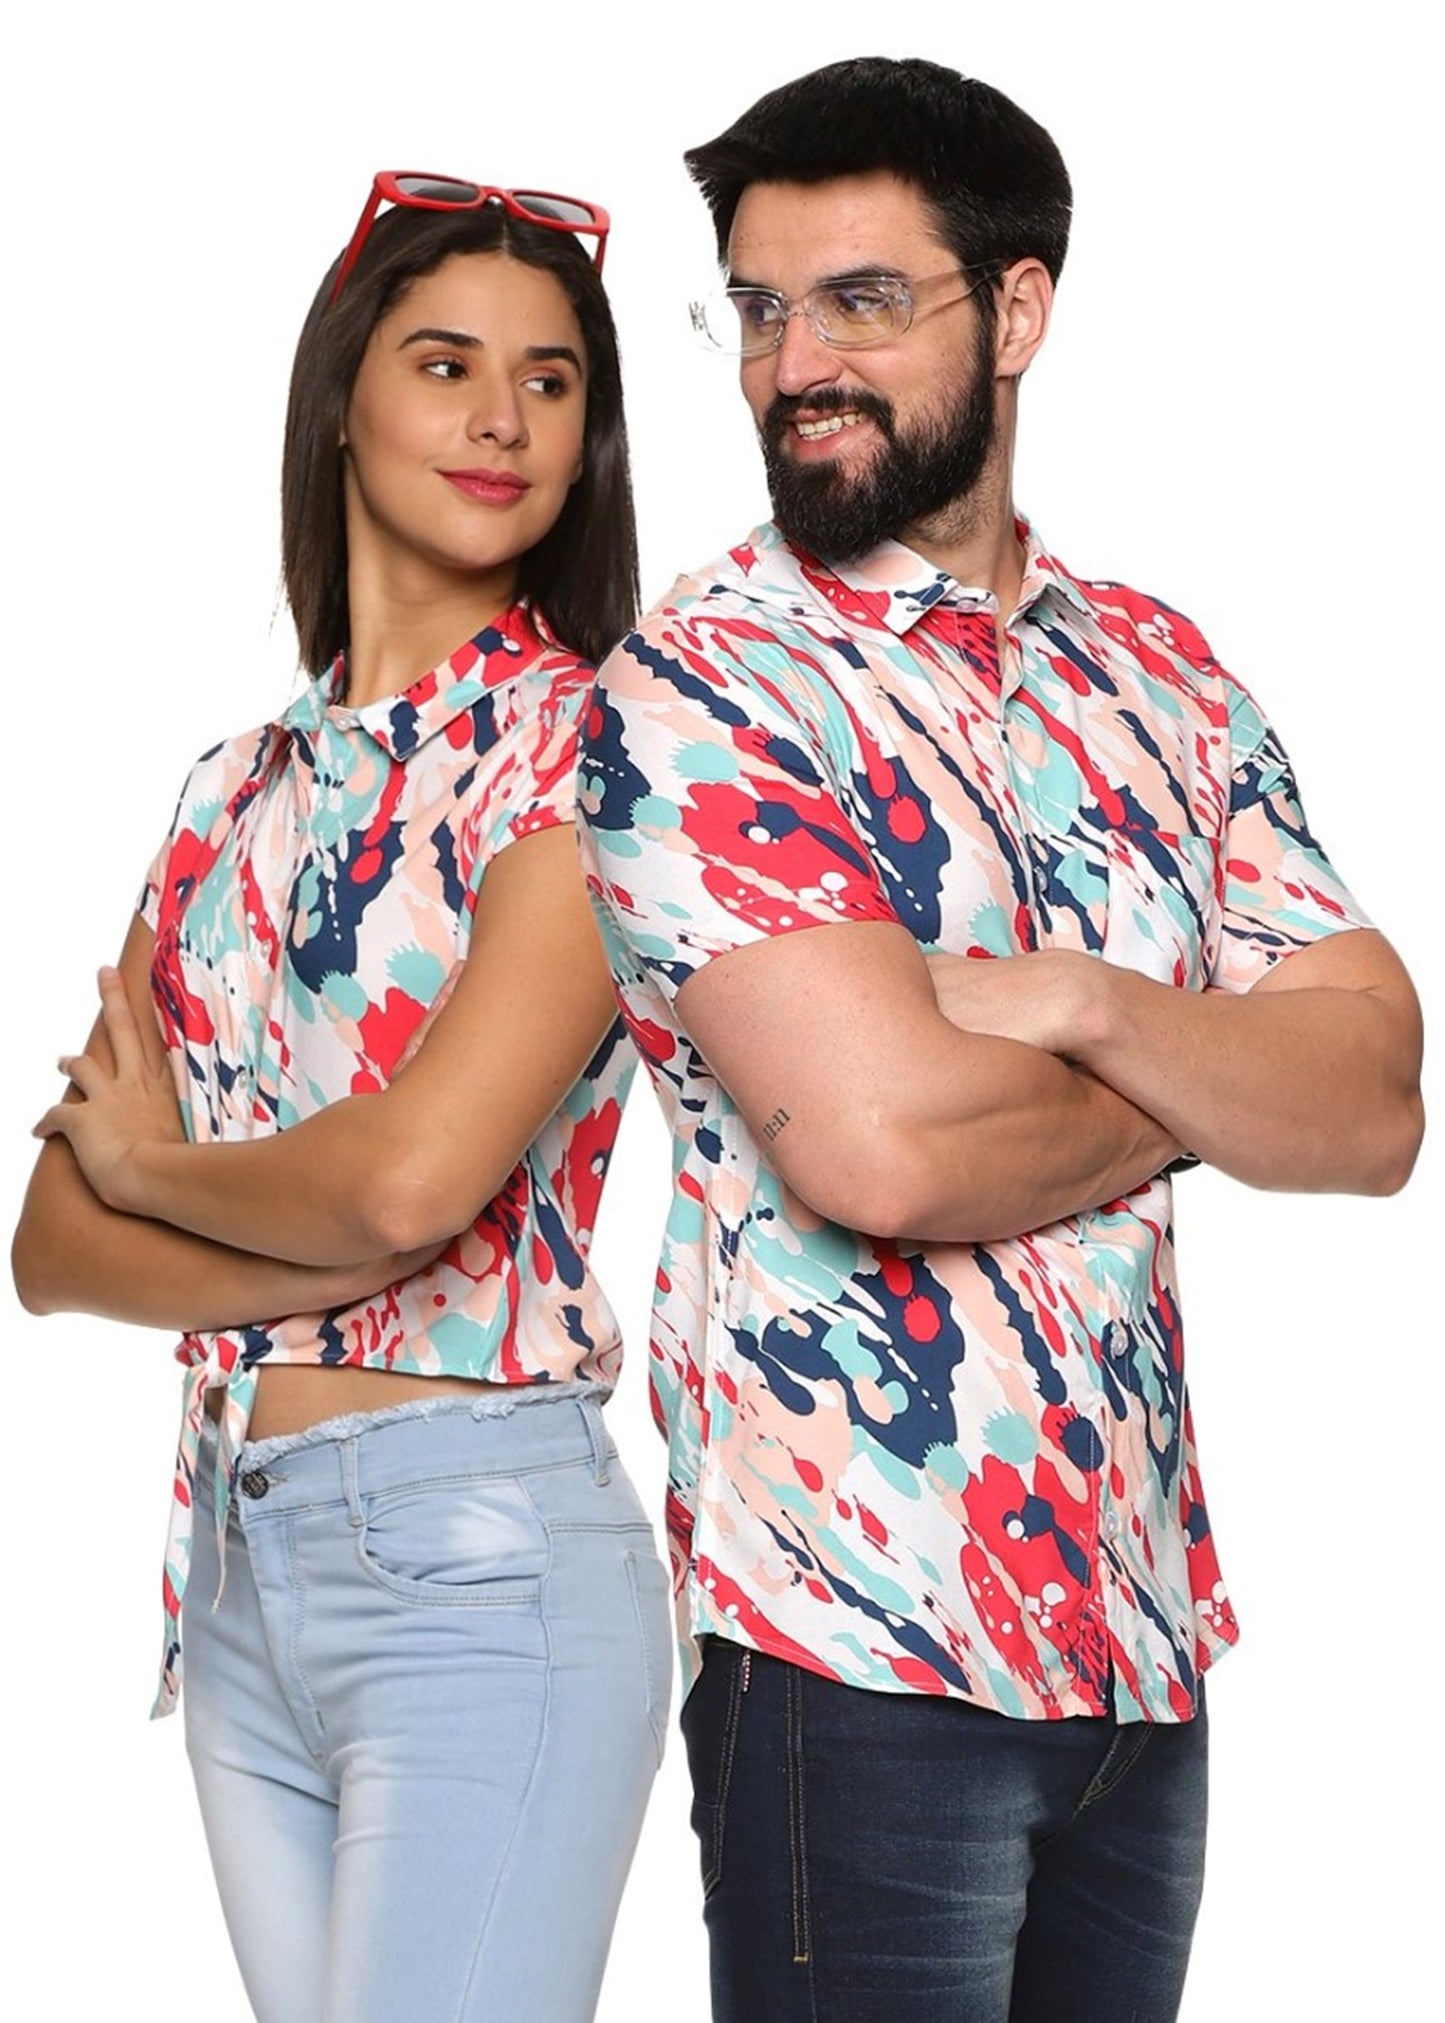 Lava Couple Matching Shirts